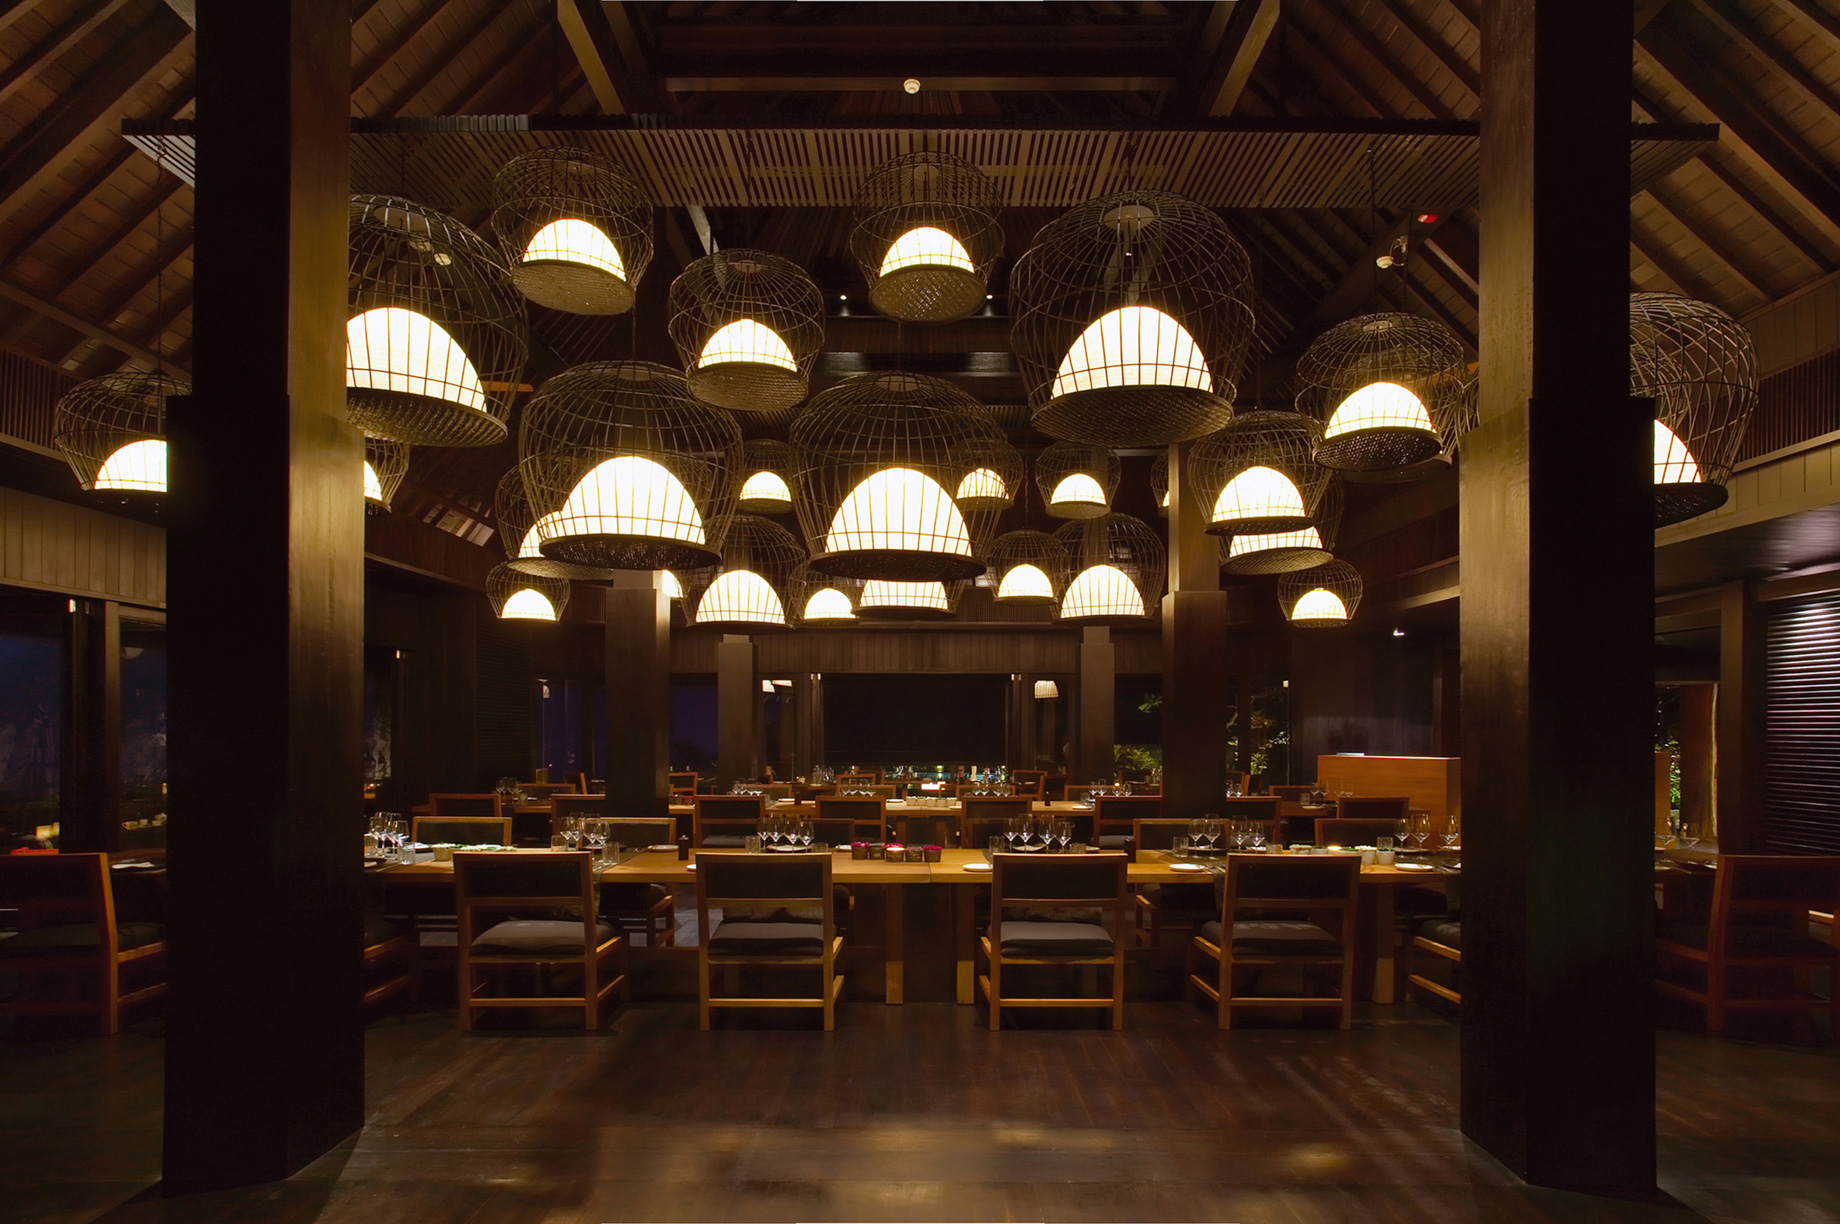 Bvlgari Resort Bali – Uluwatu, Bali, Indonesia – The Sangkar Restaurant Night